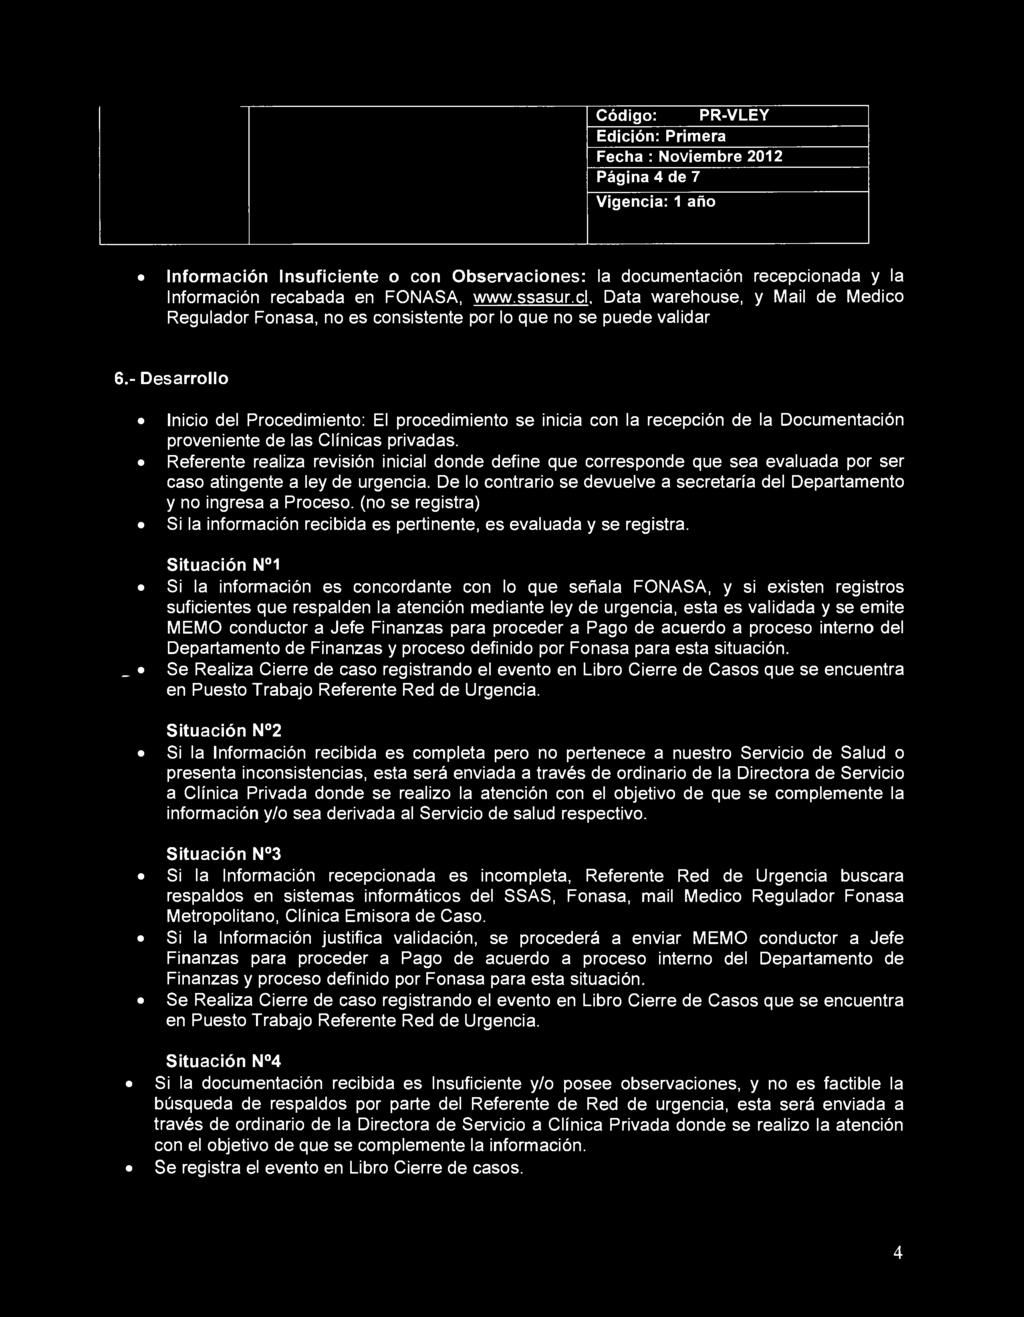 Código: PR-VLEY Página 4 de 7 Información Insuficiente o con Observaciones: la documentación recepcionada y la Información recabada en FONASA, www.ssasur.cl.